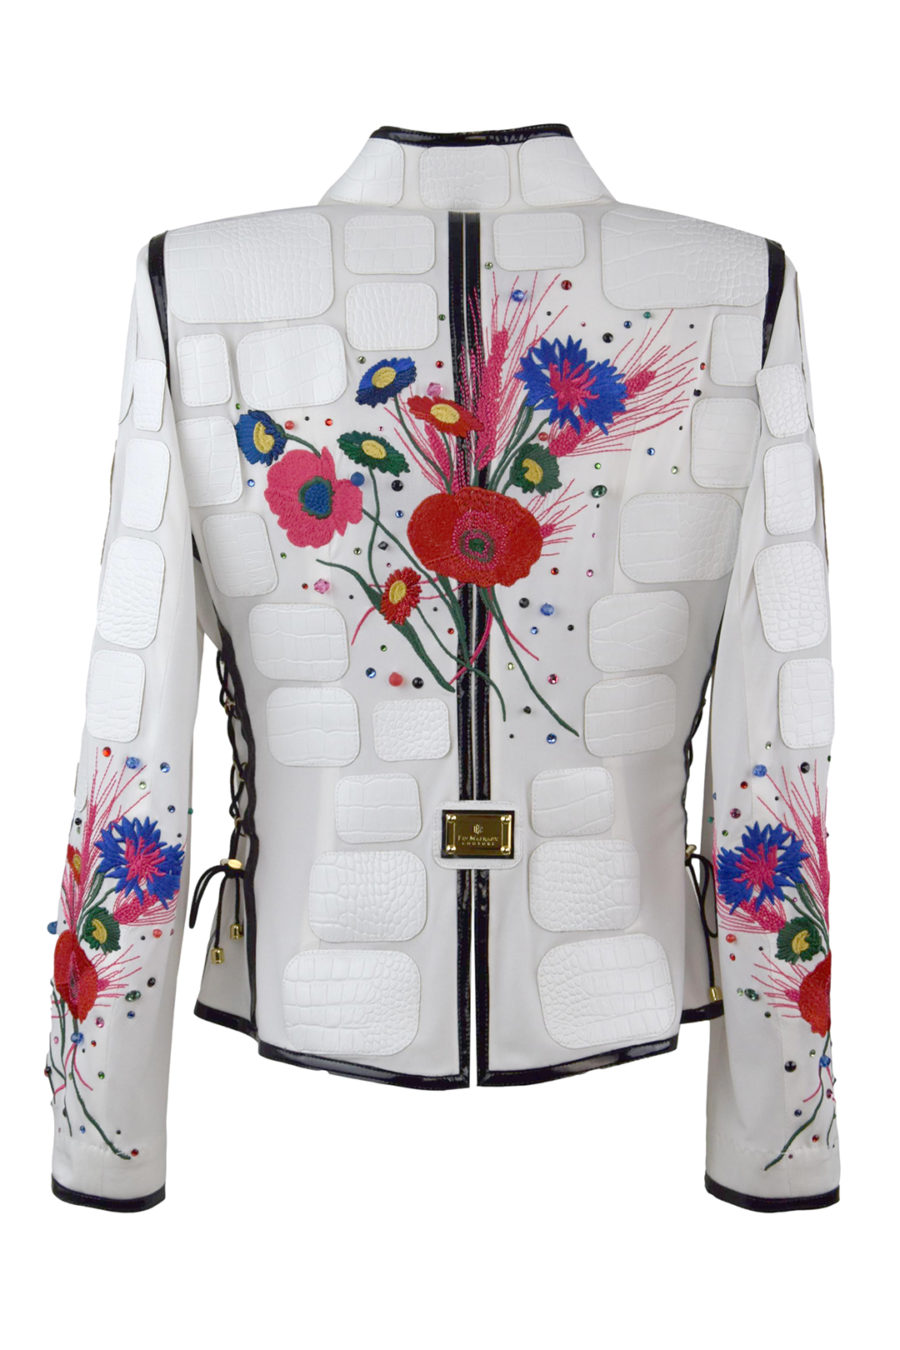 Haute Couture- Jacke mit "Country-embroidery"-5 Motive, Lederpatches und 268 handapplizierten Kristallen von Swarovski, Multisize, St.290.000